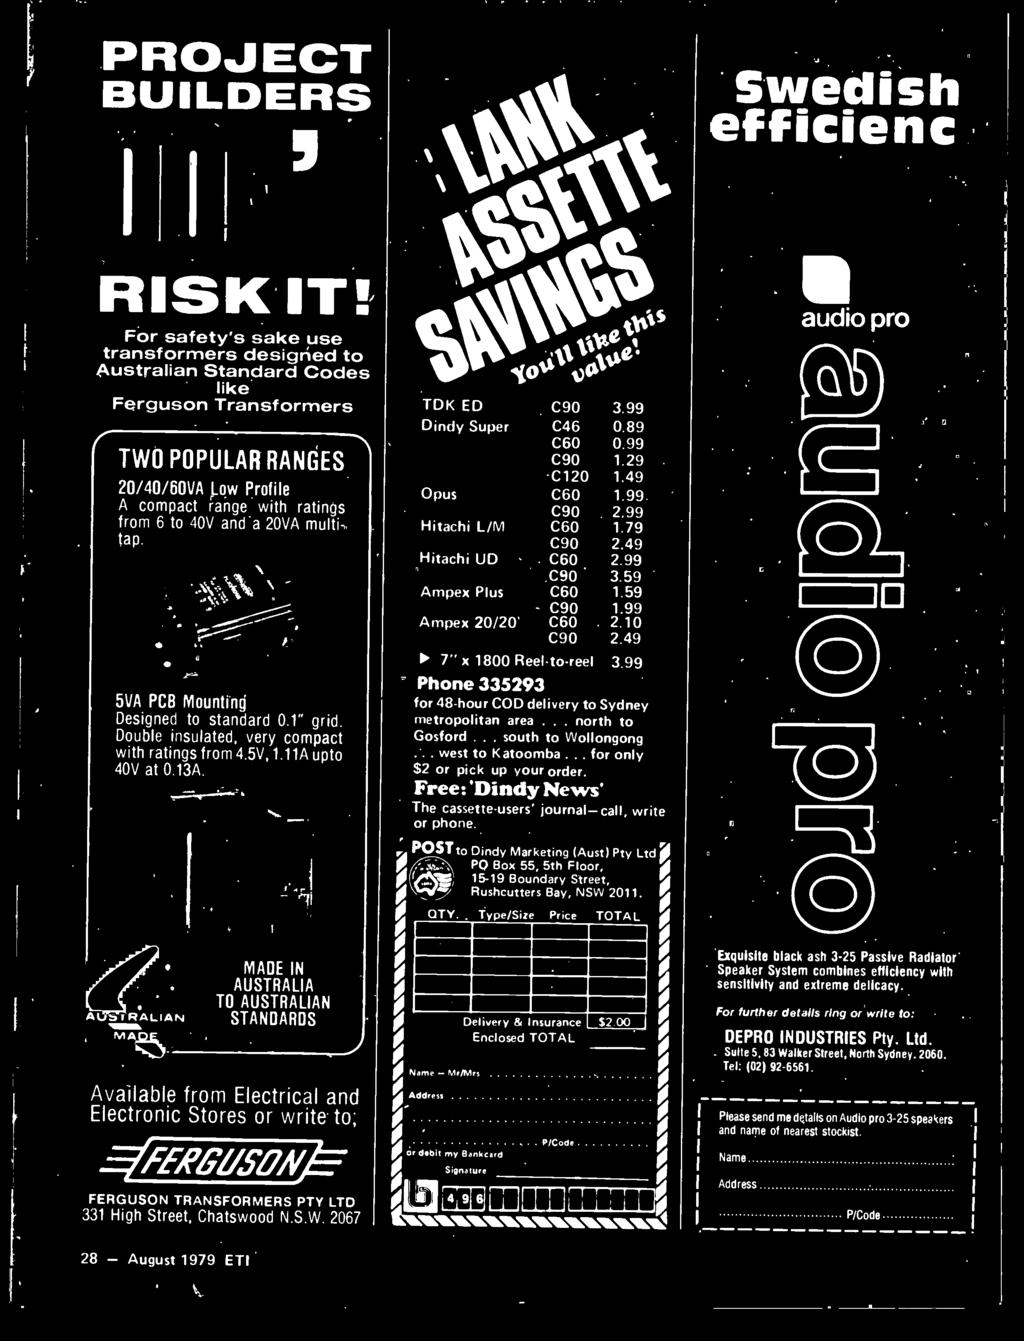 2067 28 - August 1979 ETI 1' / (of, P, TDK ED Dindy Super Opus Hitachi L/M Hitachi' UD Ampex Plus Ampex 20/20' C90 C46 C60 C90 -C120 C60 C90 C60 C90 C60 C90 C60 C90 C60 C90 3.99 0.89 0.99 1.29 1.49 1.